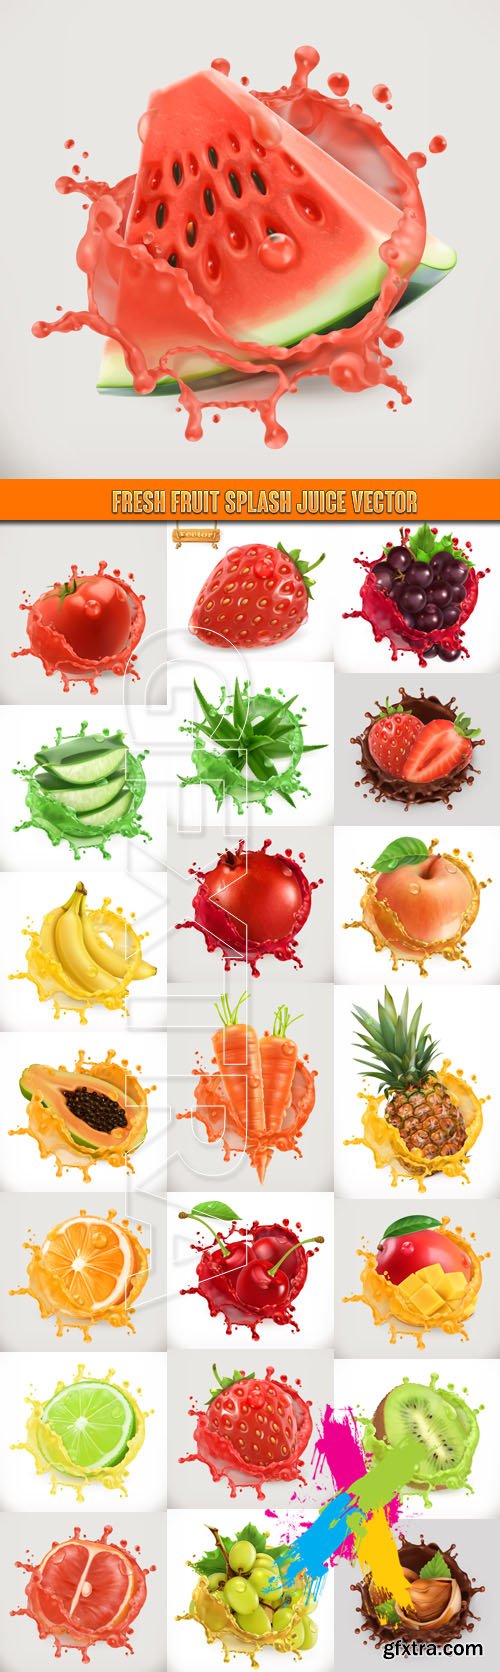 Fresh fruit splash juice vector